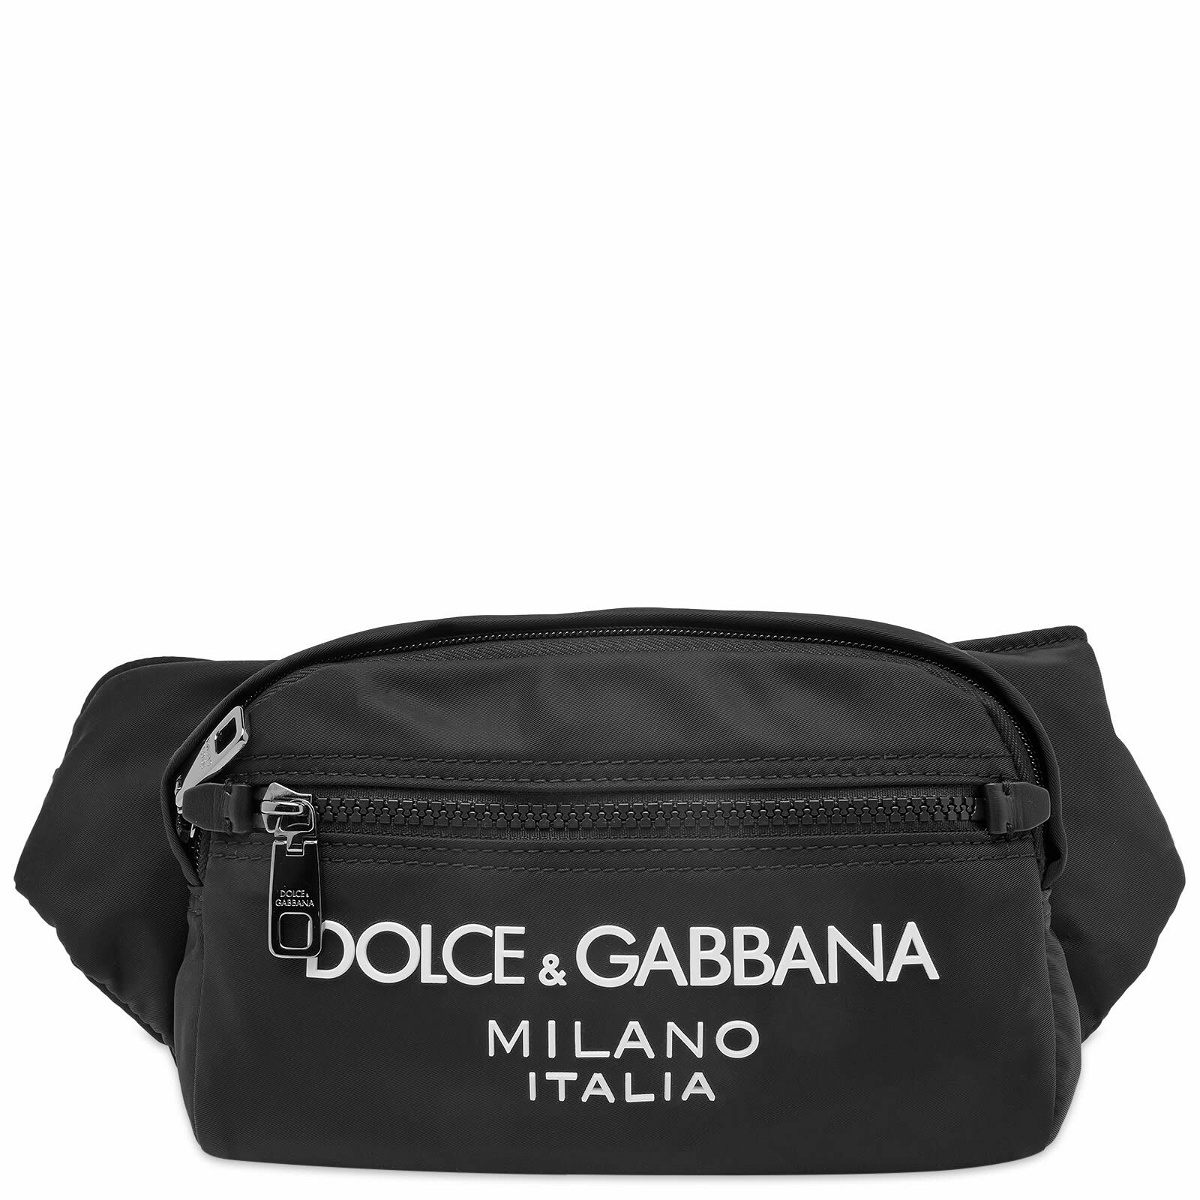 Dolce & Gabbana Men's Nylon Waist Bag in Black Dolce & Gabbana